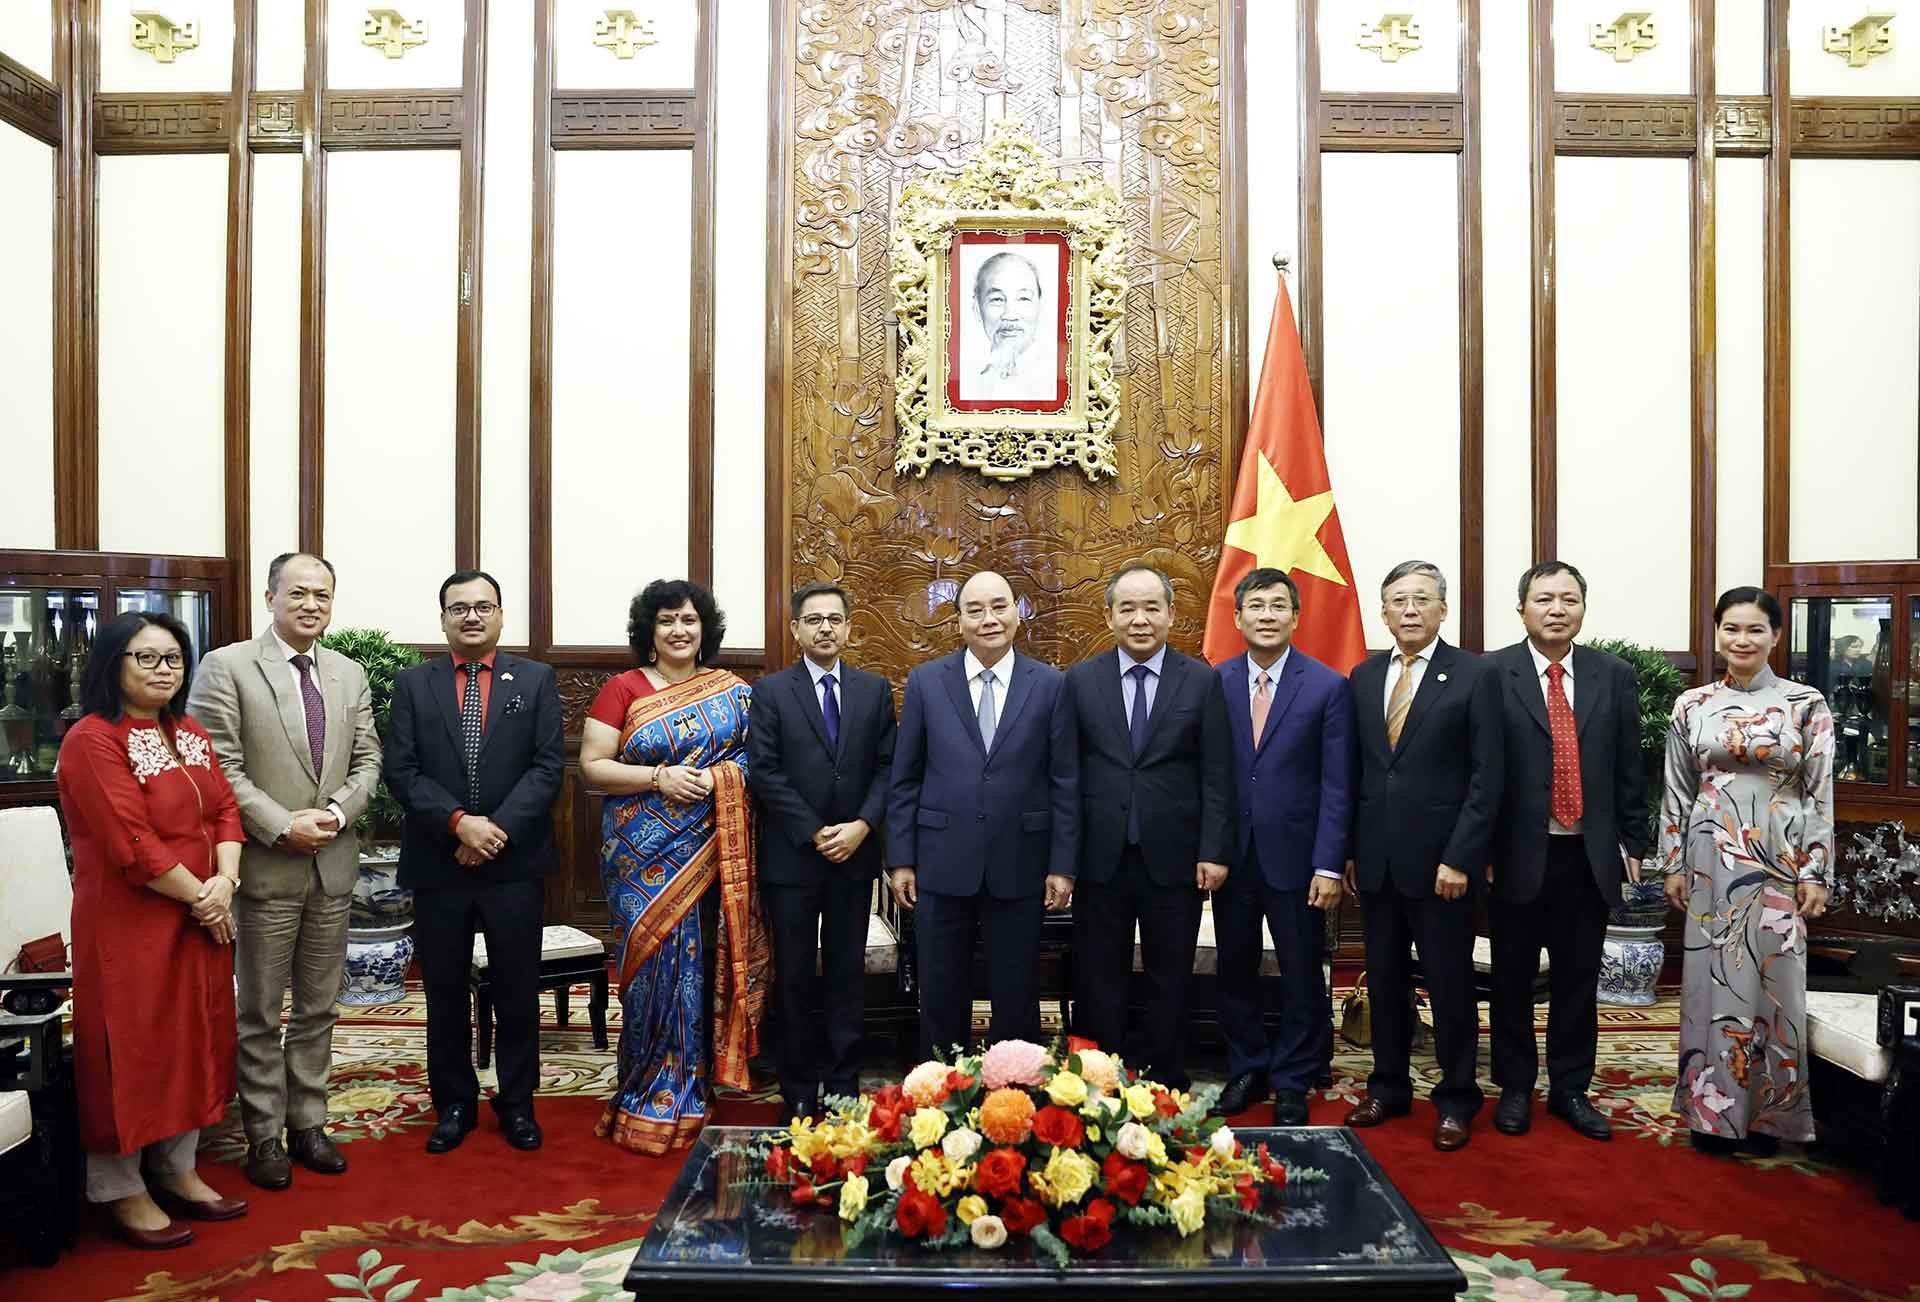 Chủ tịch nước Nguyễn Xuân Phúc chụp ảnh chung với Đại sứ Ấn Độ Pranay Verma và các đại biểu. (Nguồn: TTXVN)